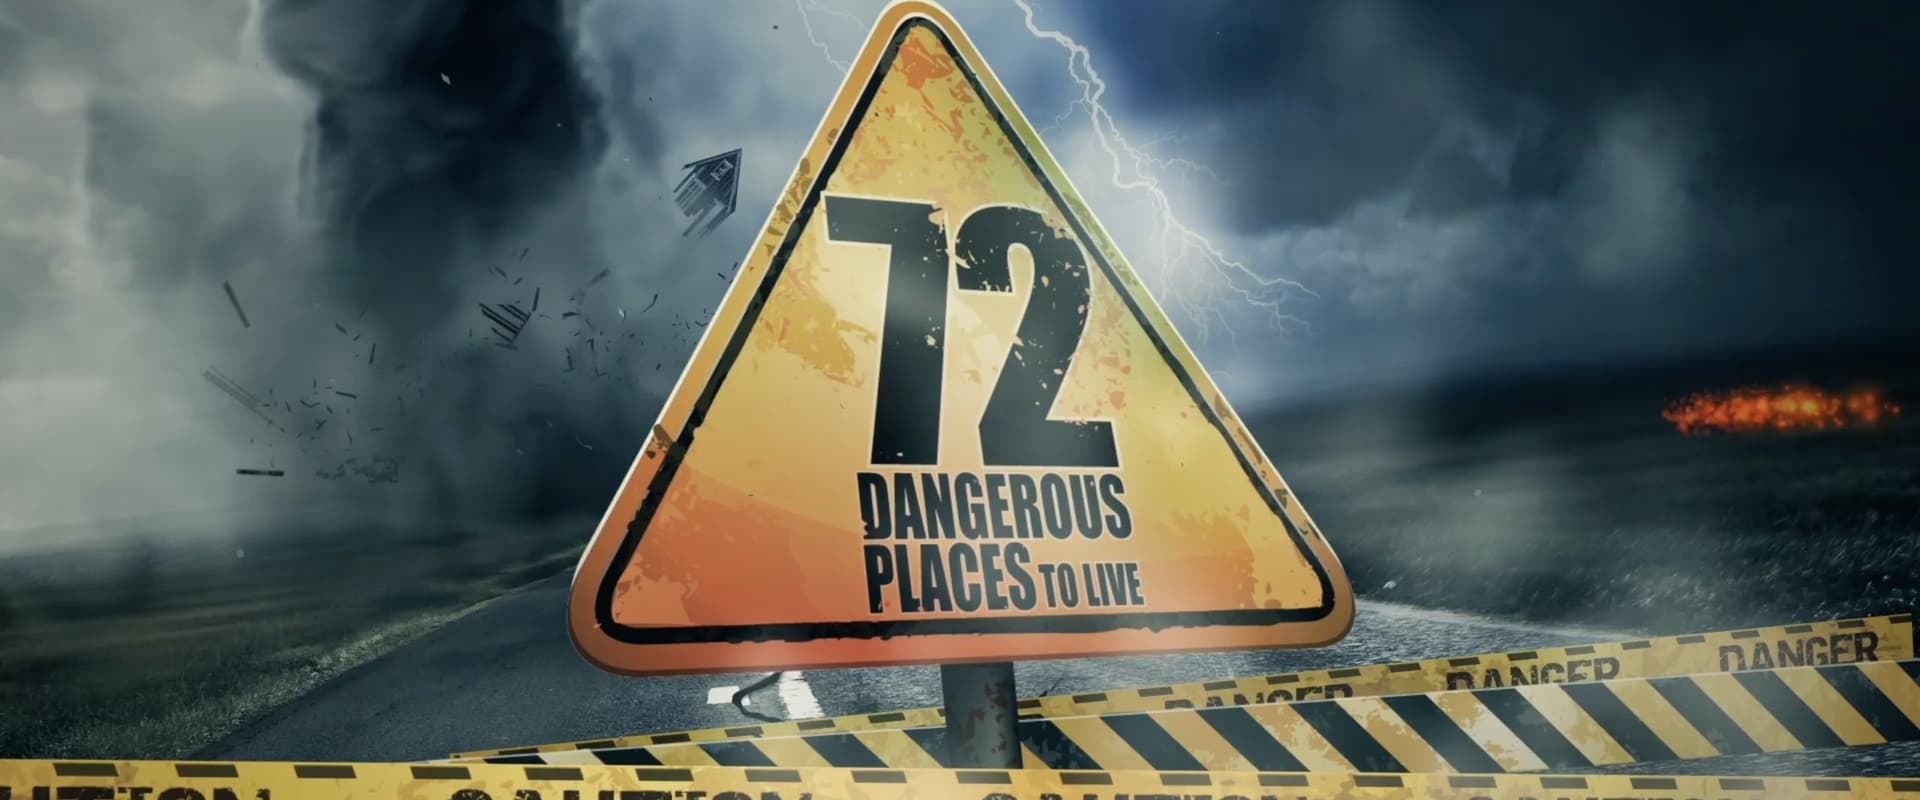 72 Dangerous Places to Live